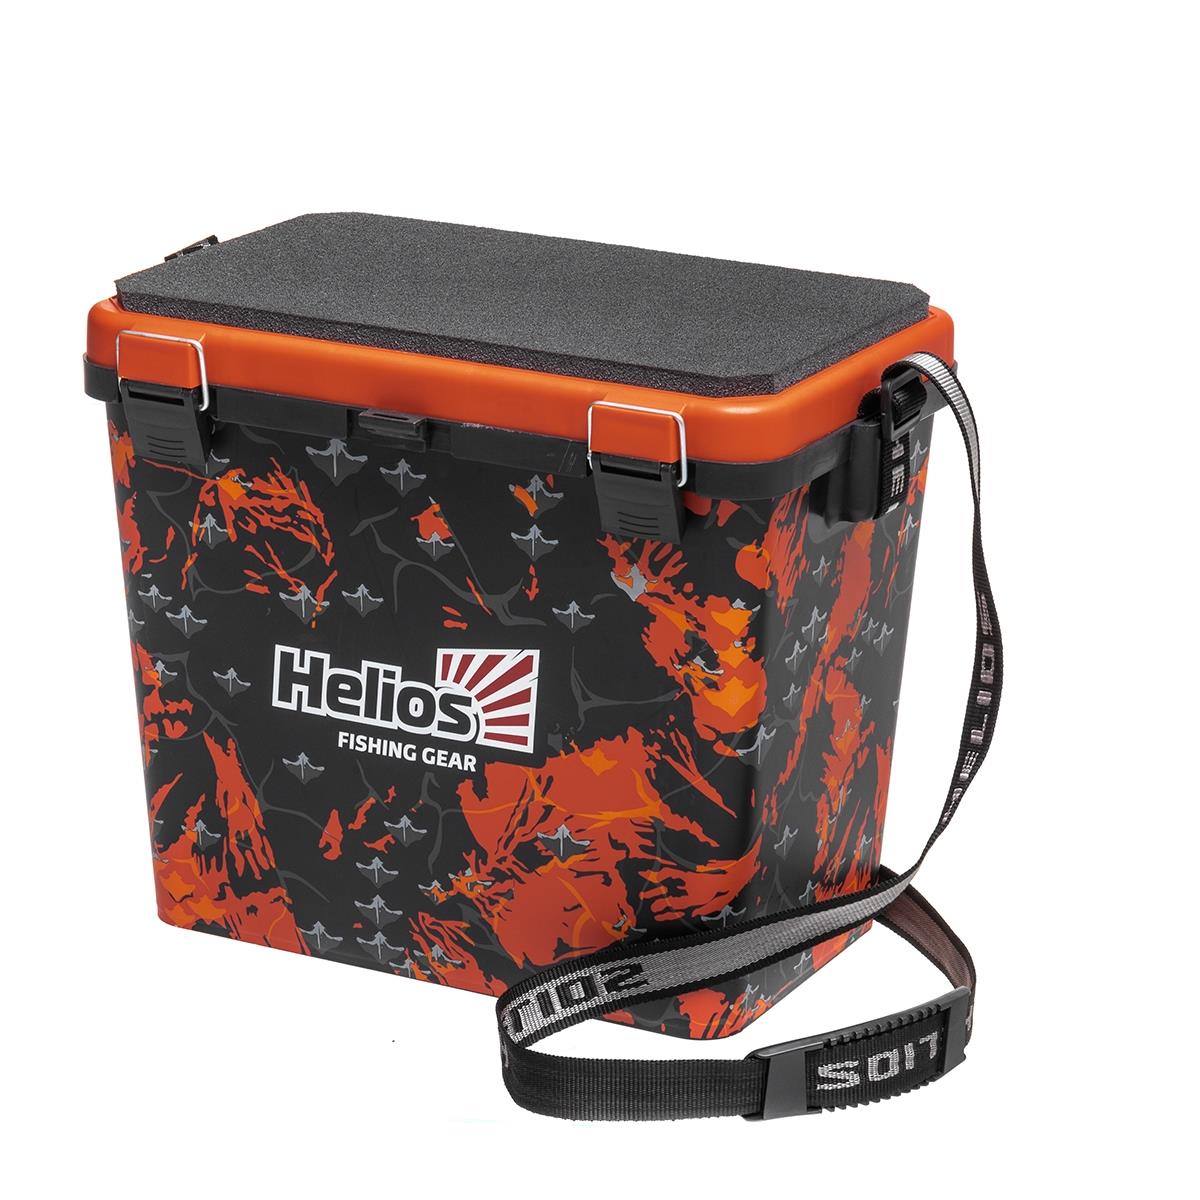 Ящик рыболовный зимний SHARK односекционный оранжевый Helios сумка клатч на клапане оранжевый